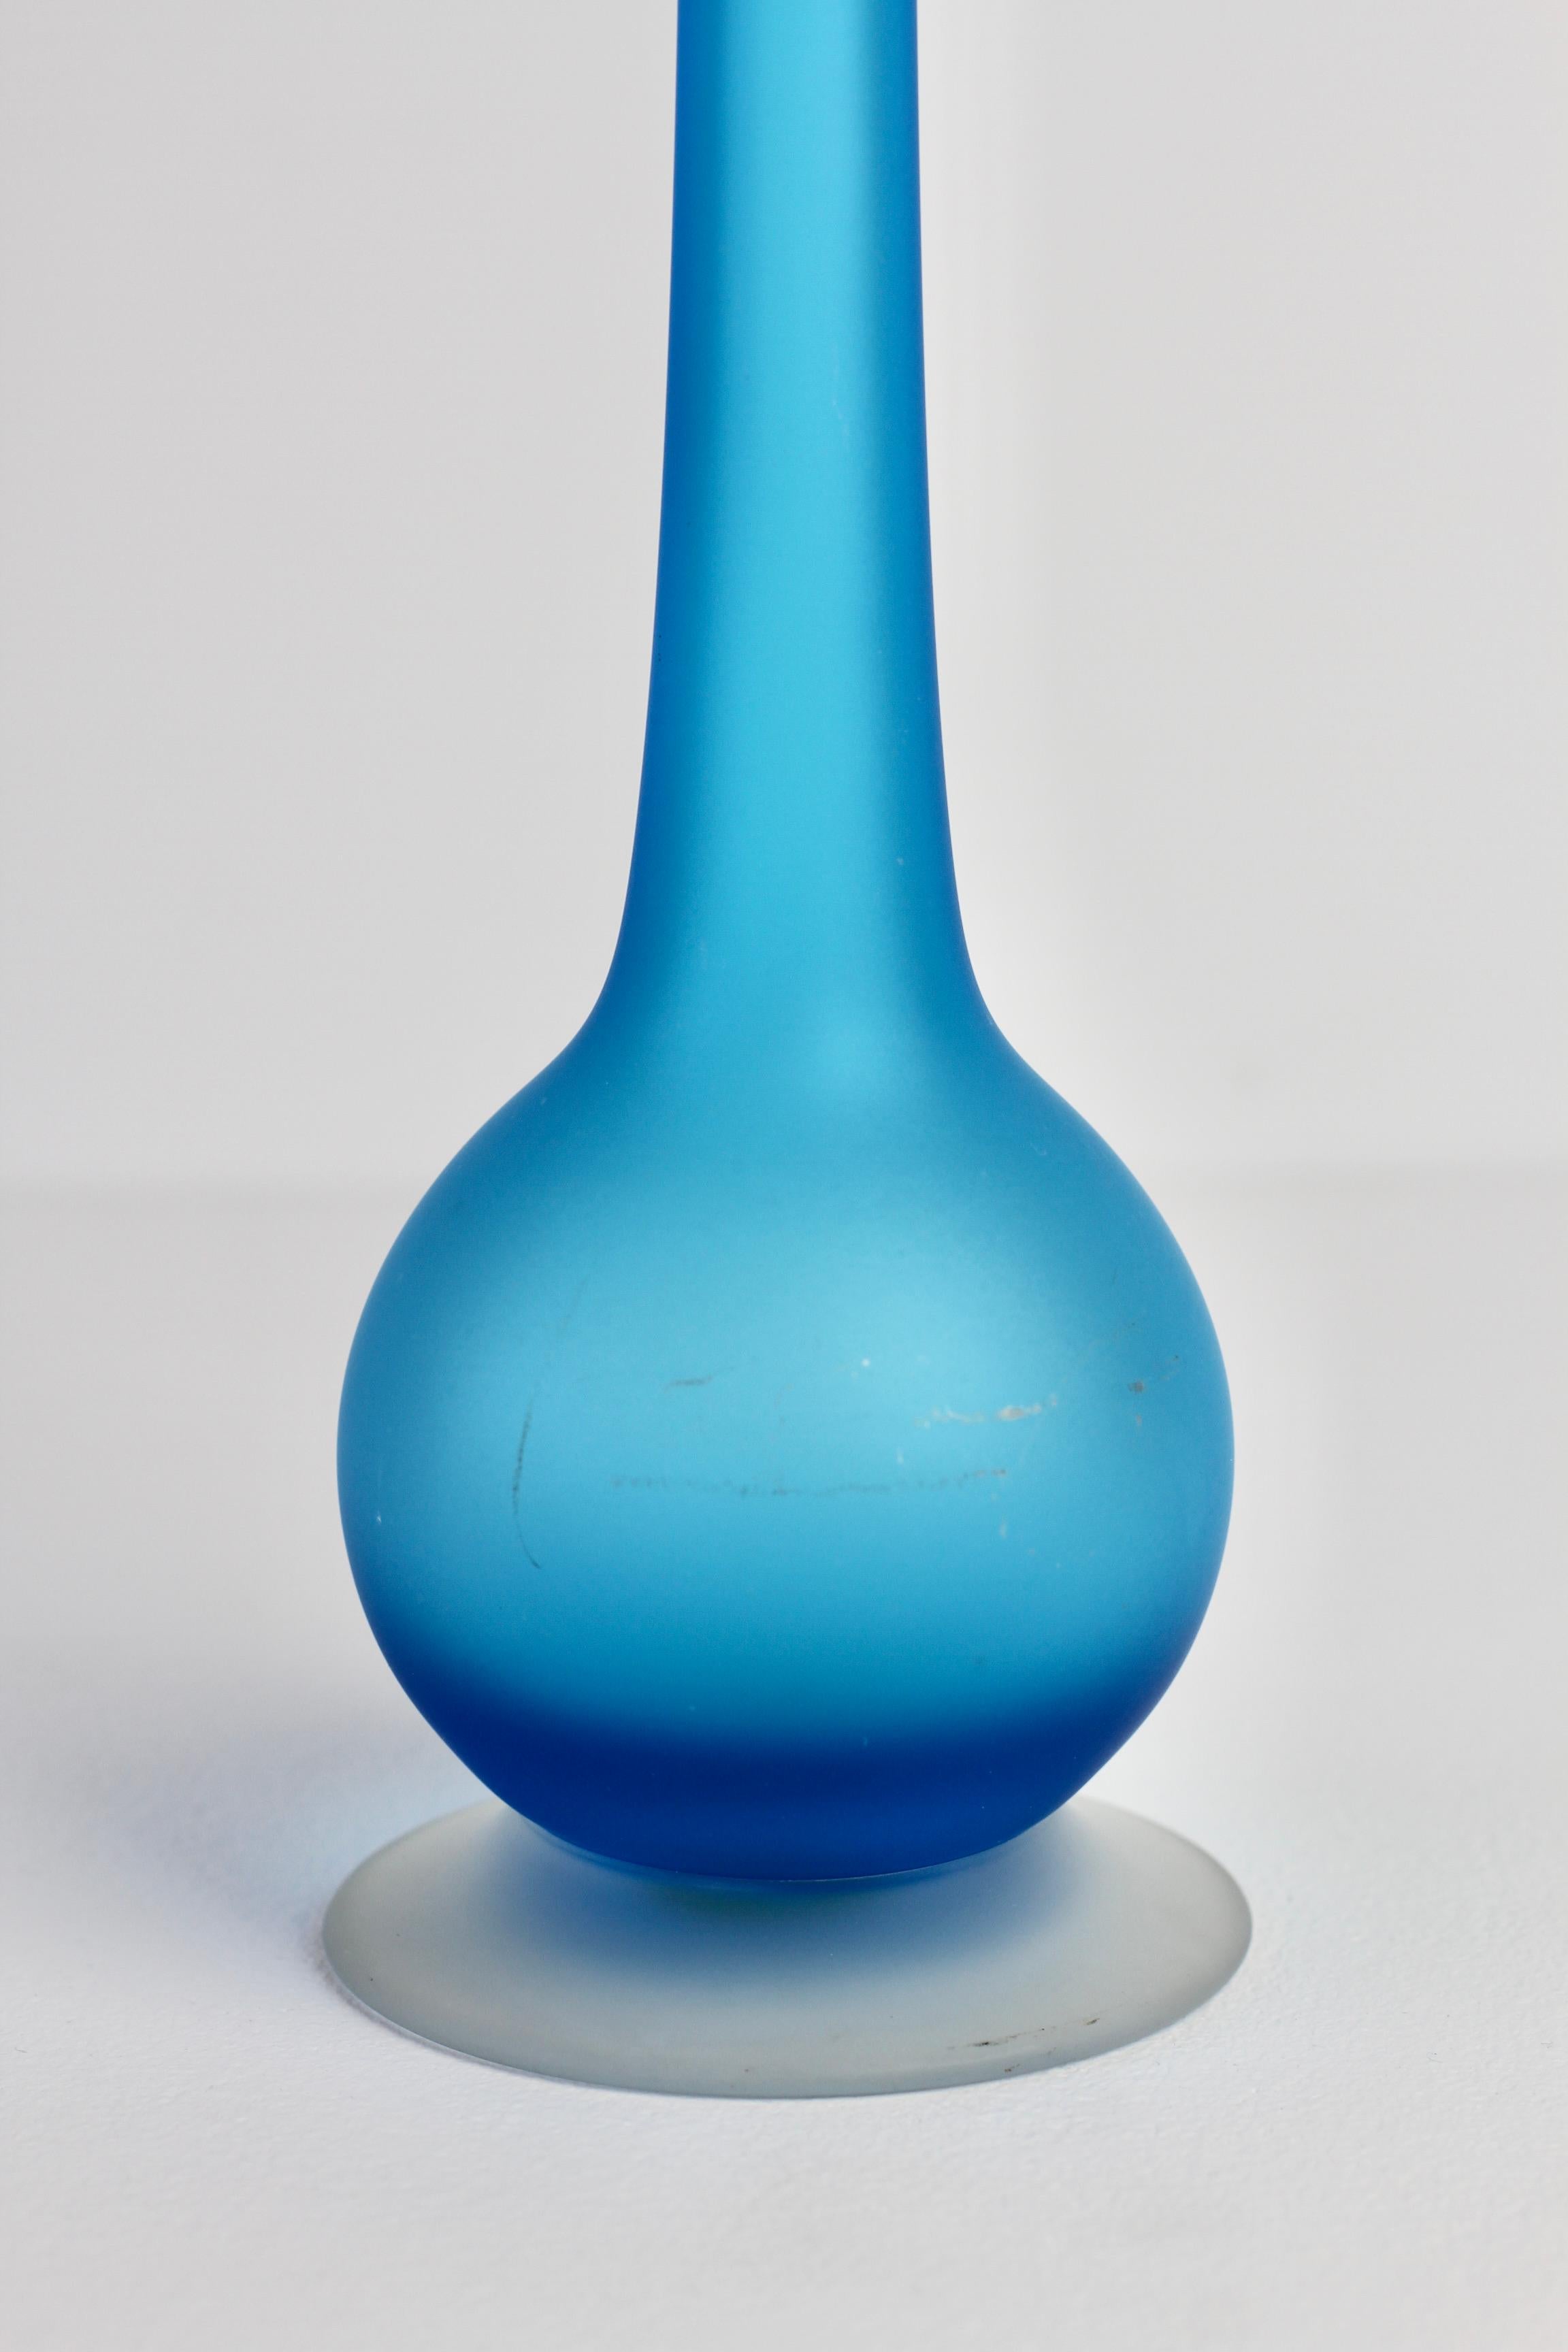 Rare Colorful Blue Carlo Moretti Satinato Murano Glass Pencil Vase For Sale 5